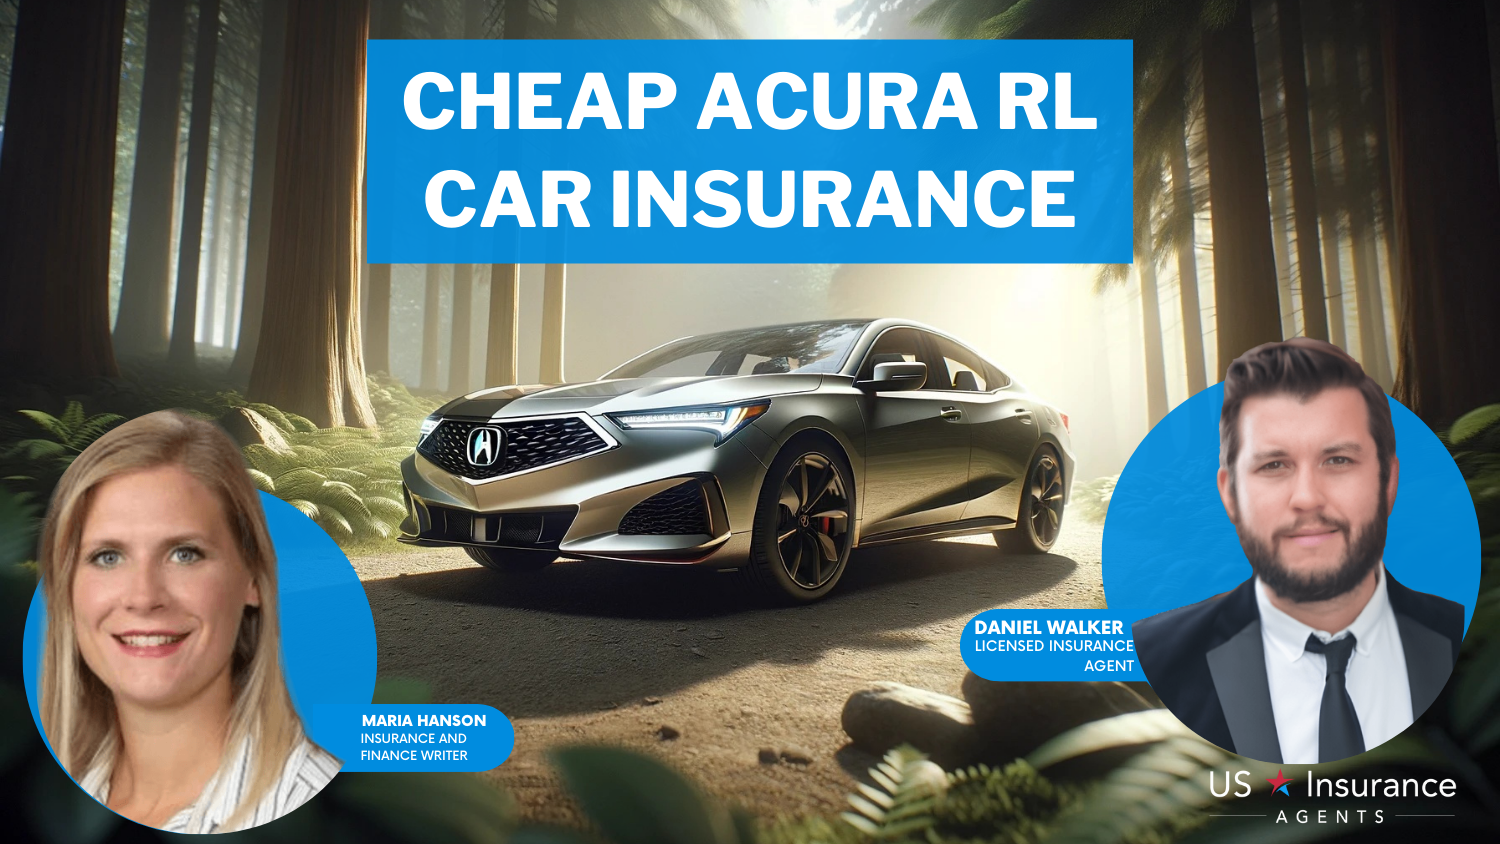 Cheap Acura RL Car Insurance: NJM, Erie, and USAA